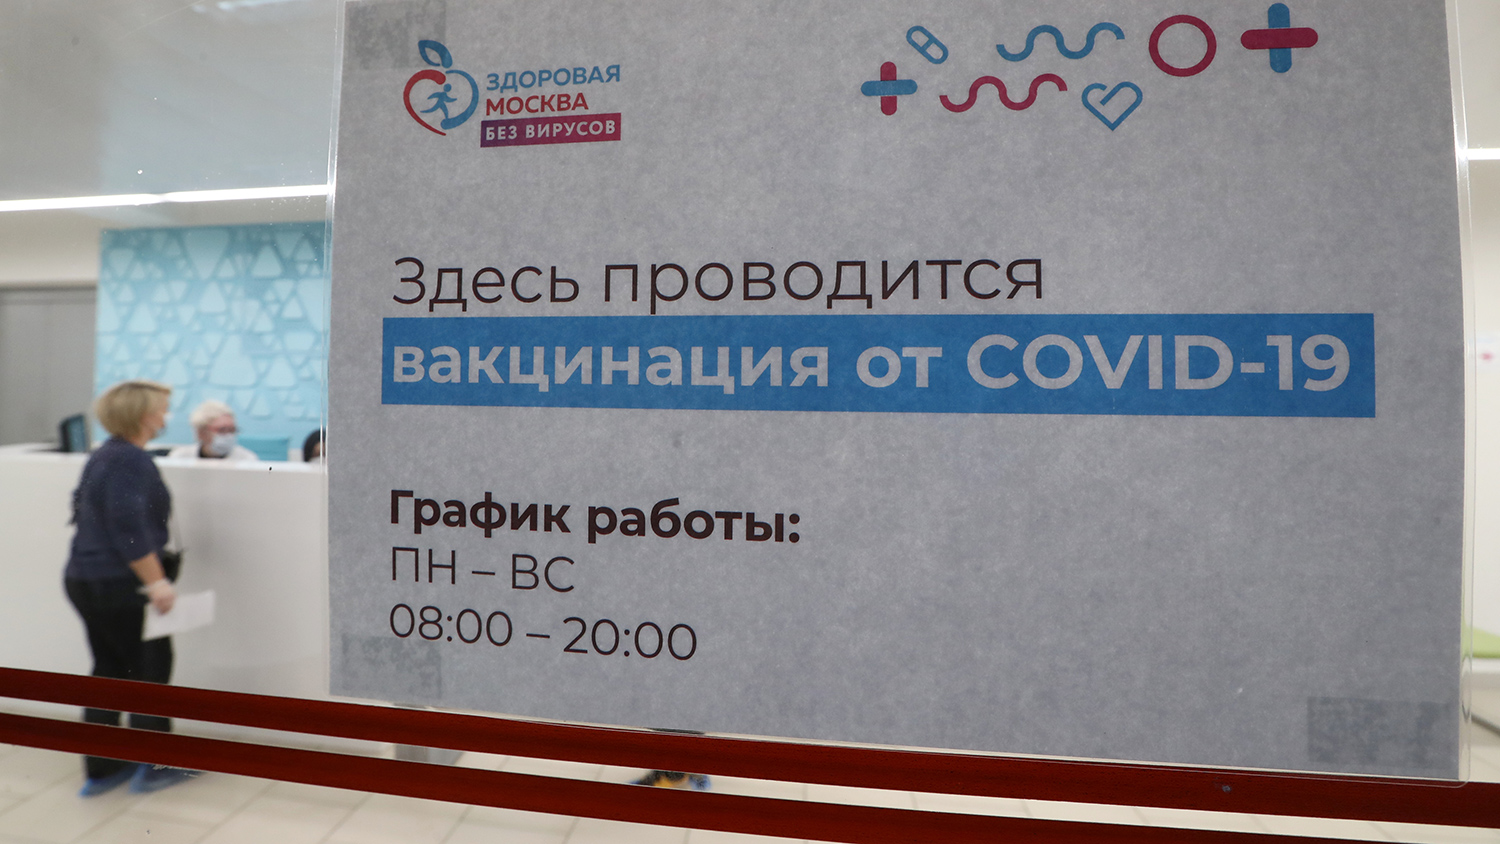 Оренбург где сделать прививку. Здесь проводится вакцинация. Вакцинация от ковид в Москве. Вакцинация от коронавируса в Москве. Здоровая Москва без вирусов вакцинация.